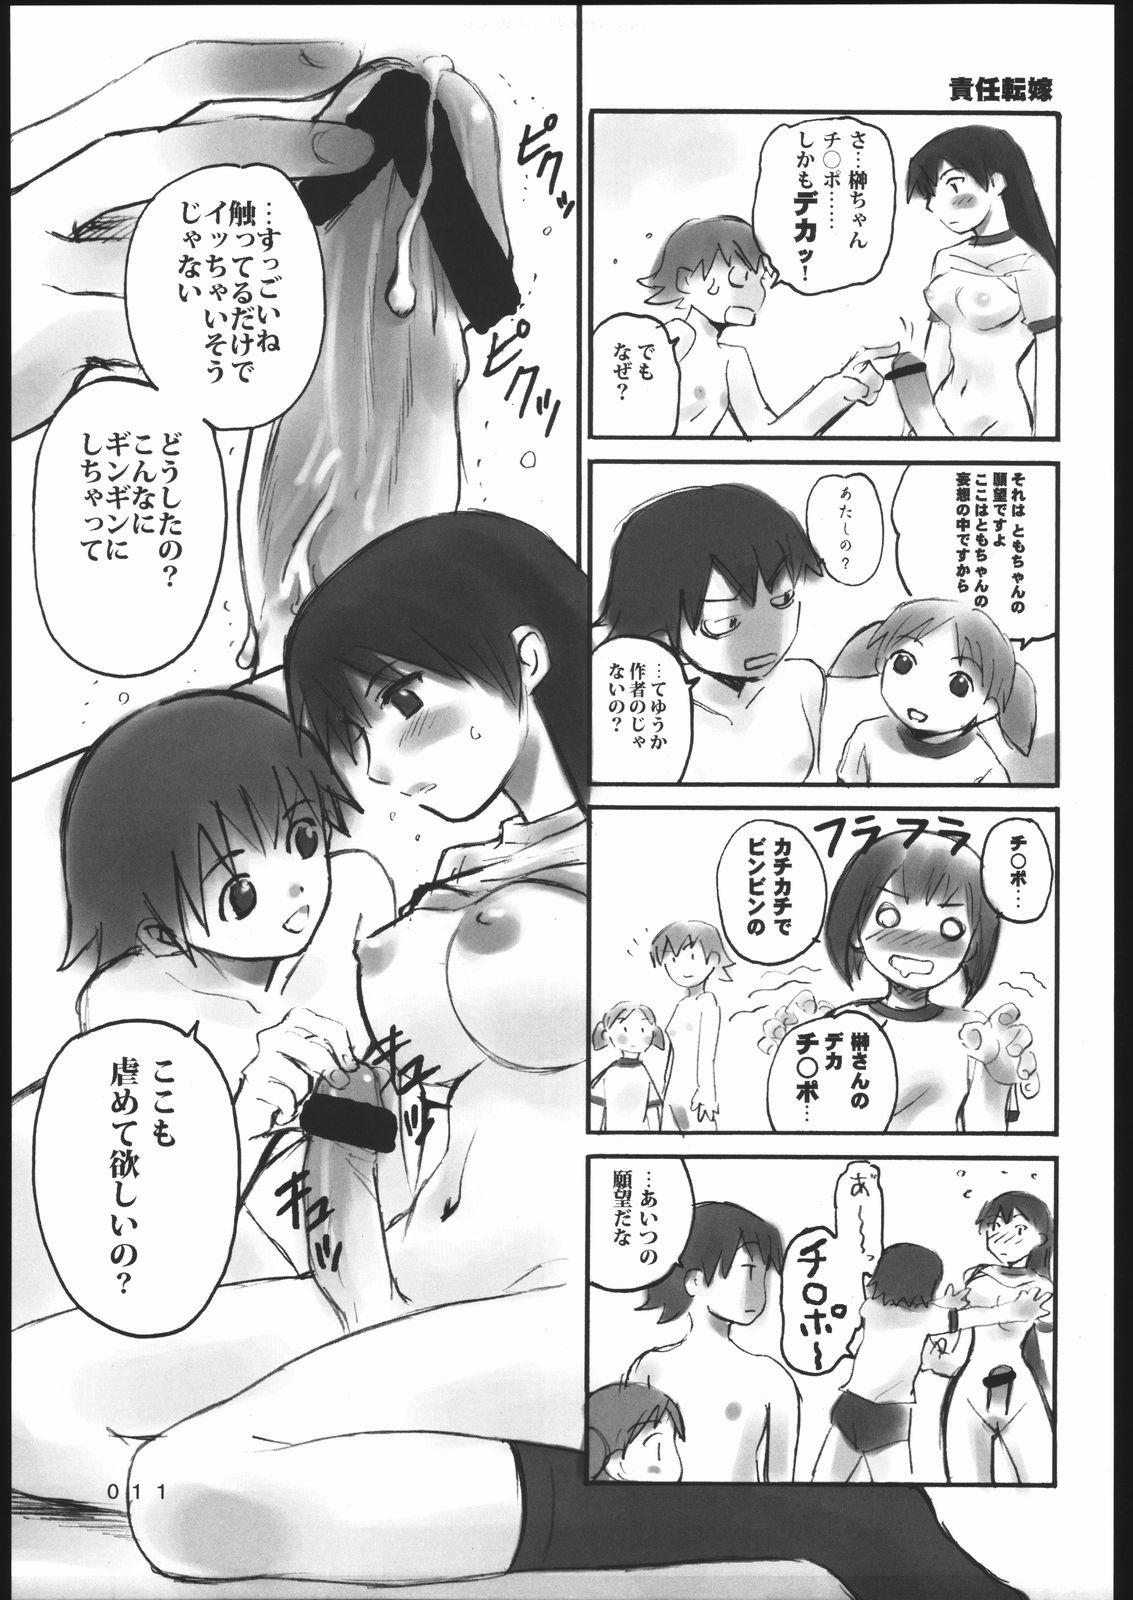 Dorm 000.5 - Azumanga daioh Webcam - Page 10